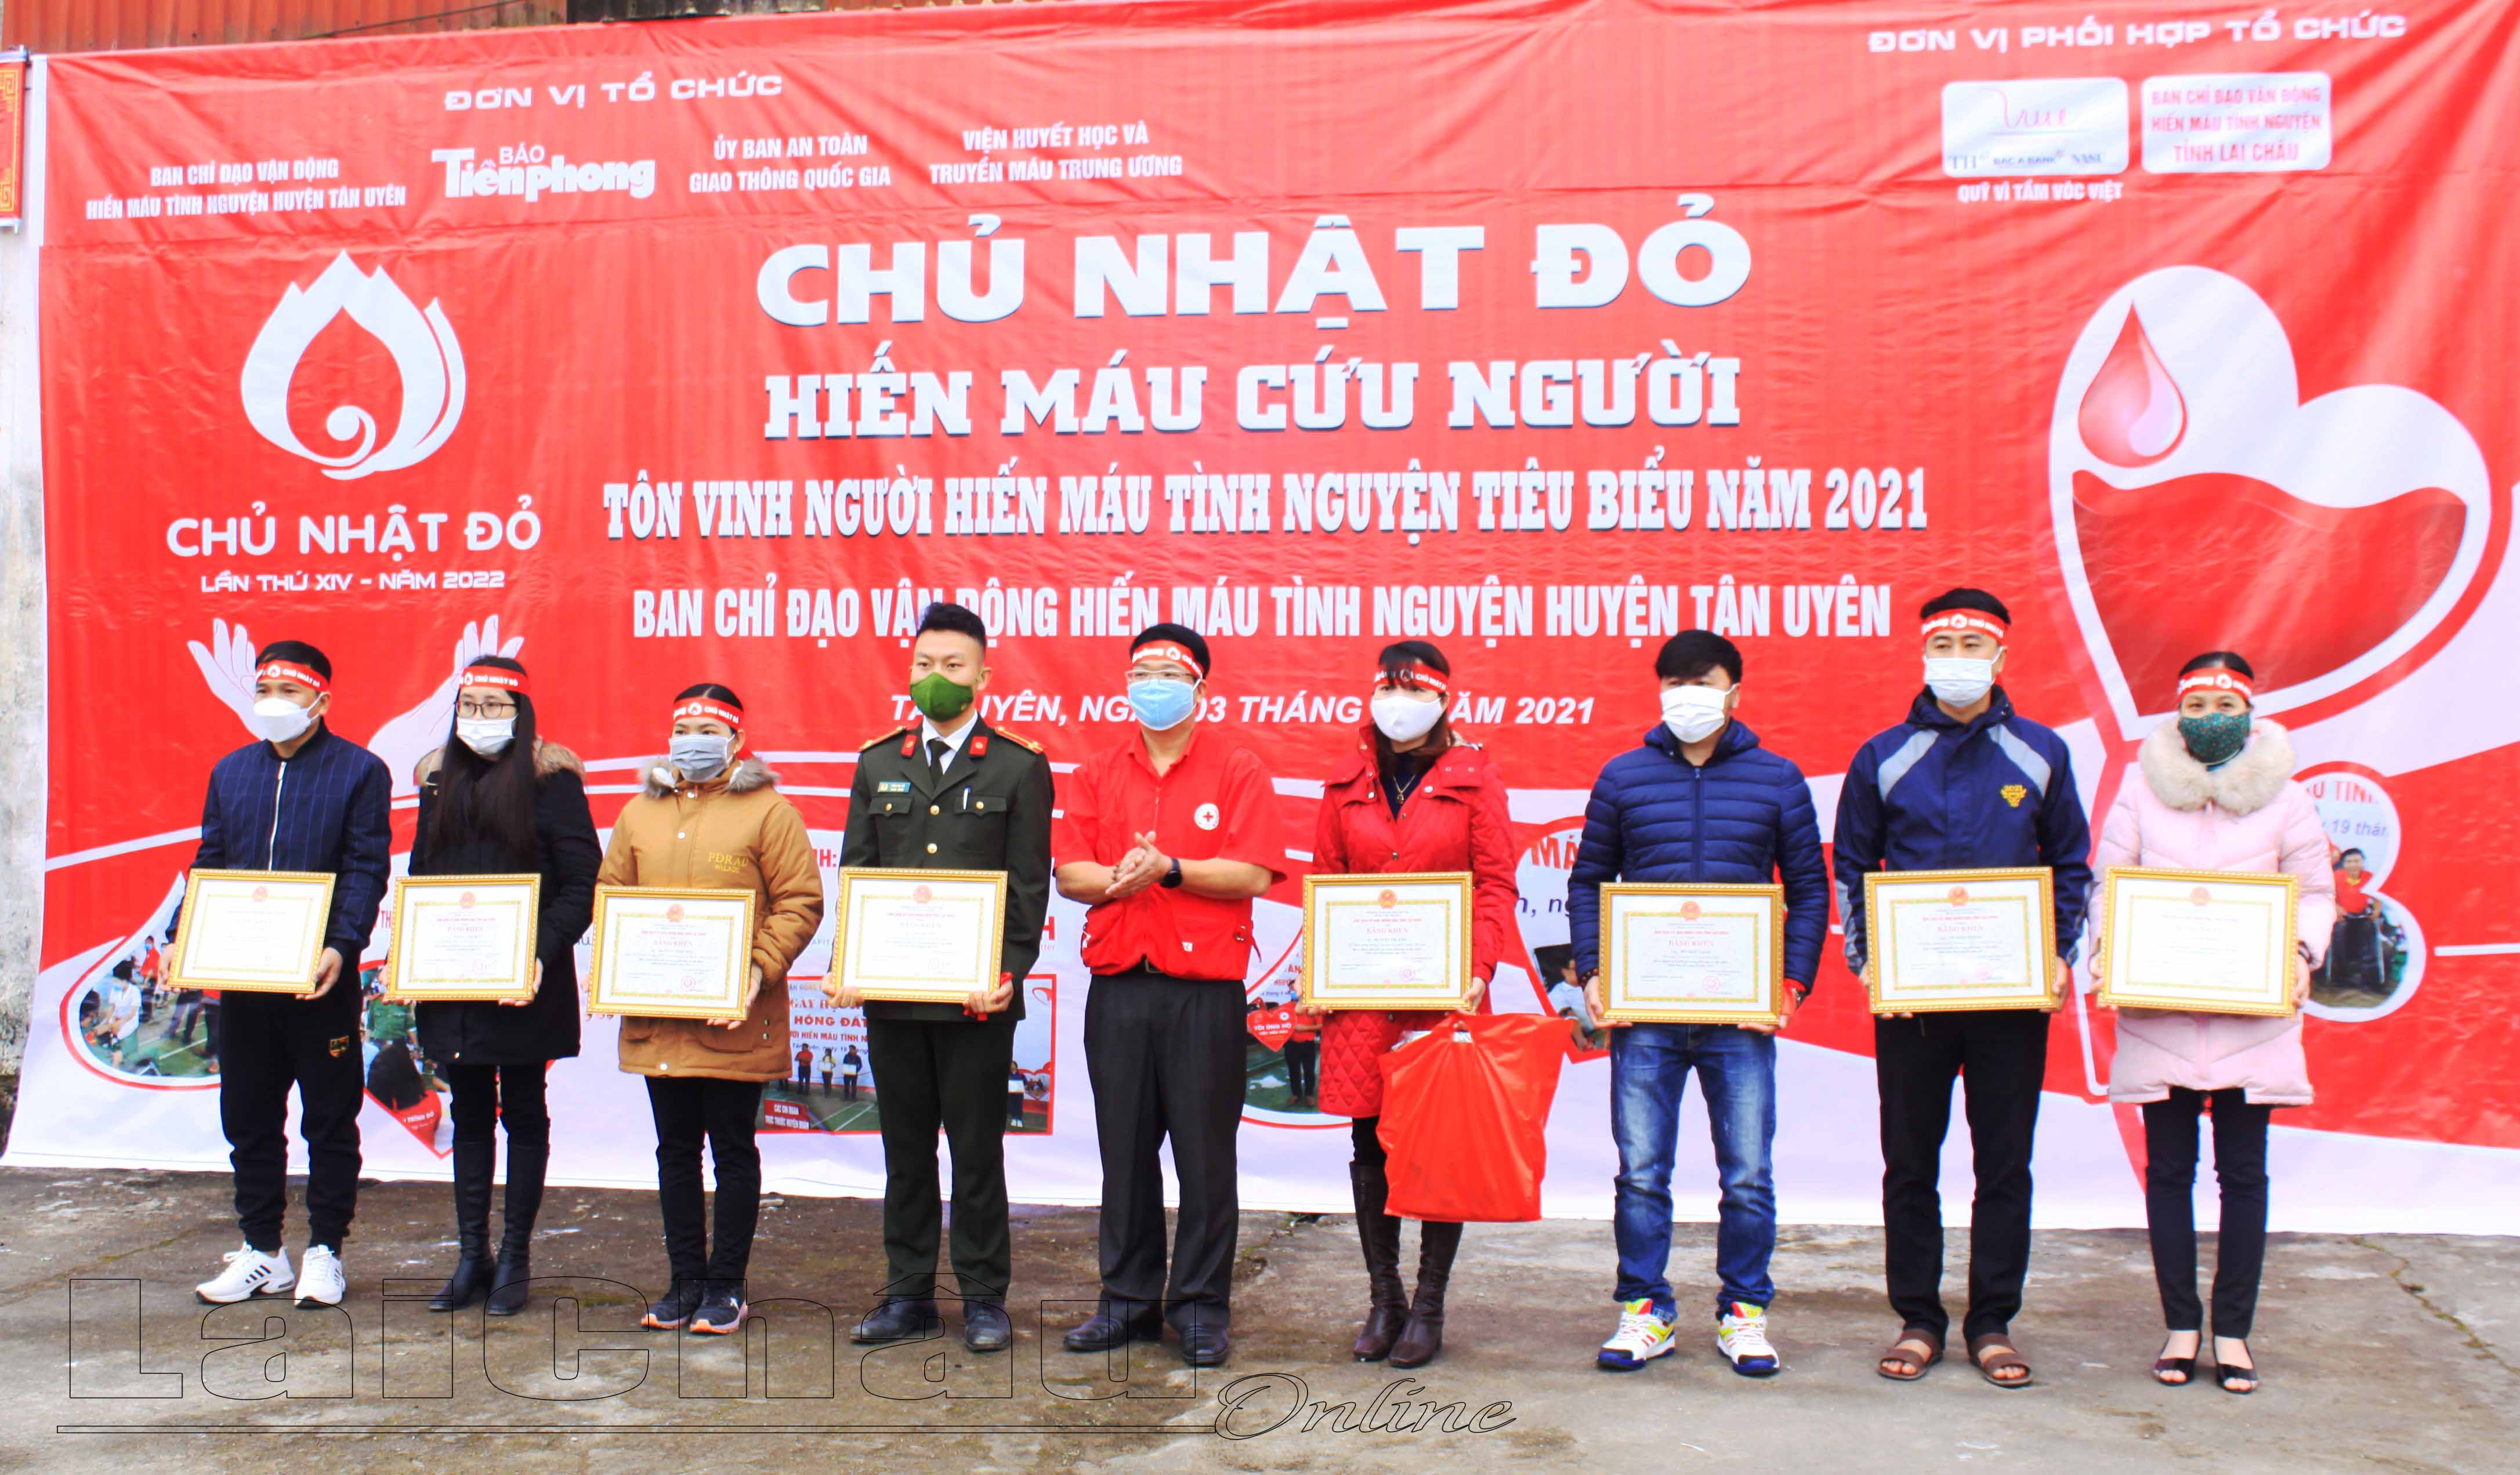 Thừa ủy quyền của Chủ tịch UBND tỉnh, đồng chí Tạ Hồng Long - Phó Chủ tịch Hội Chữ thập đỏ tỉnh trao bằng khen cho các cá nhân có thành tích tiêu biểu trong công tác hiến máu.